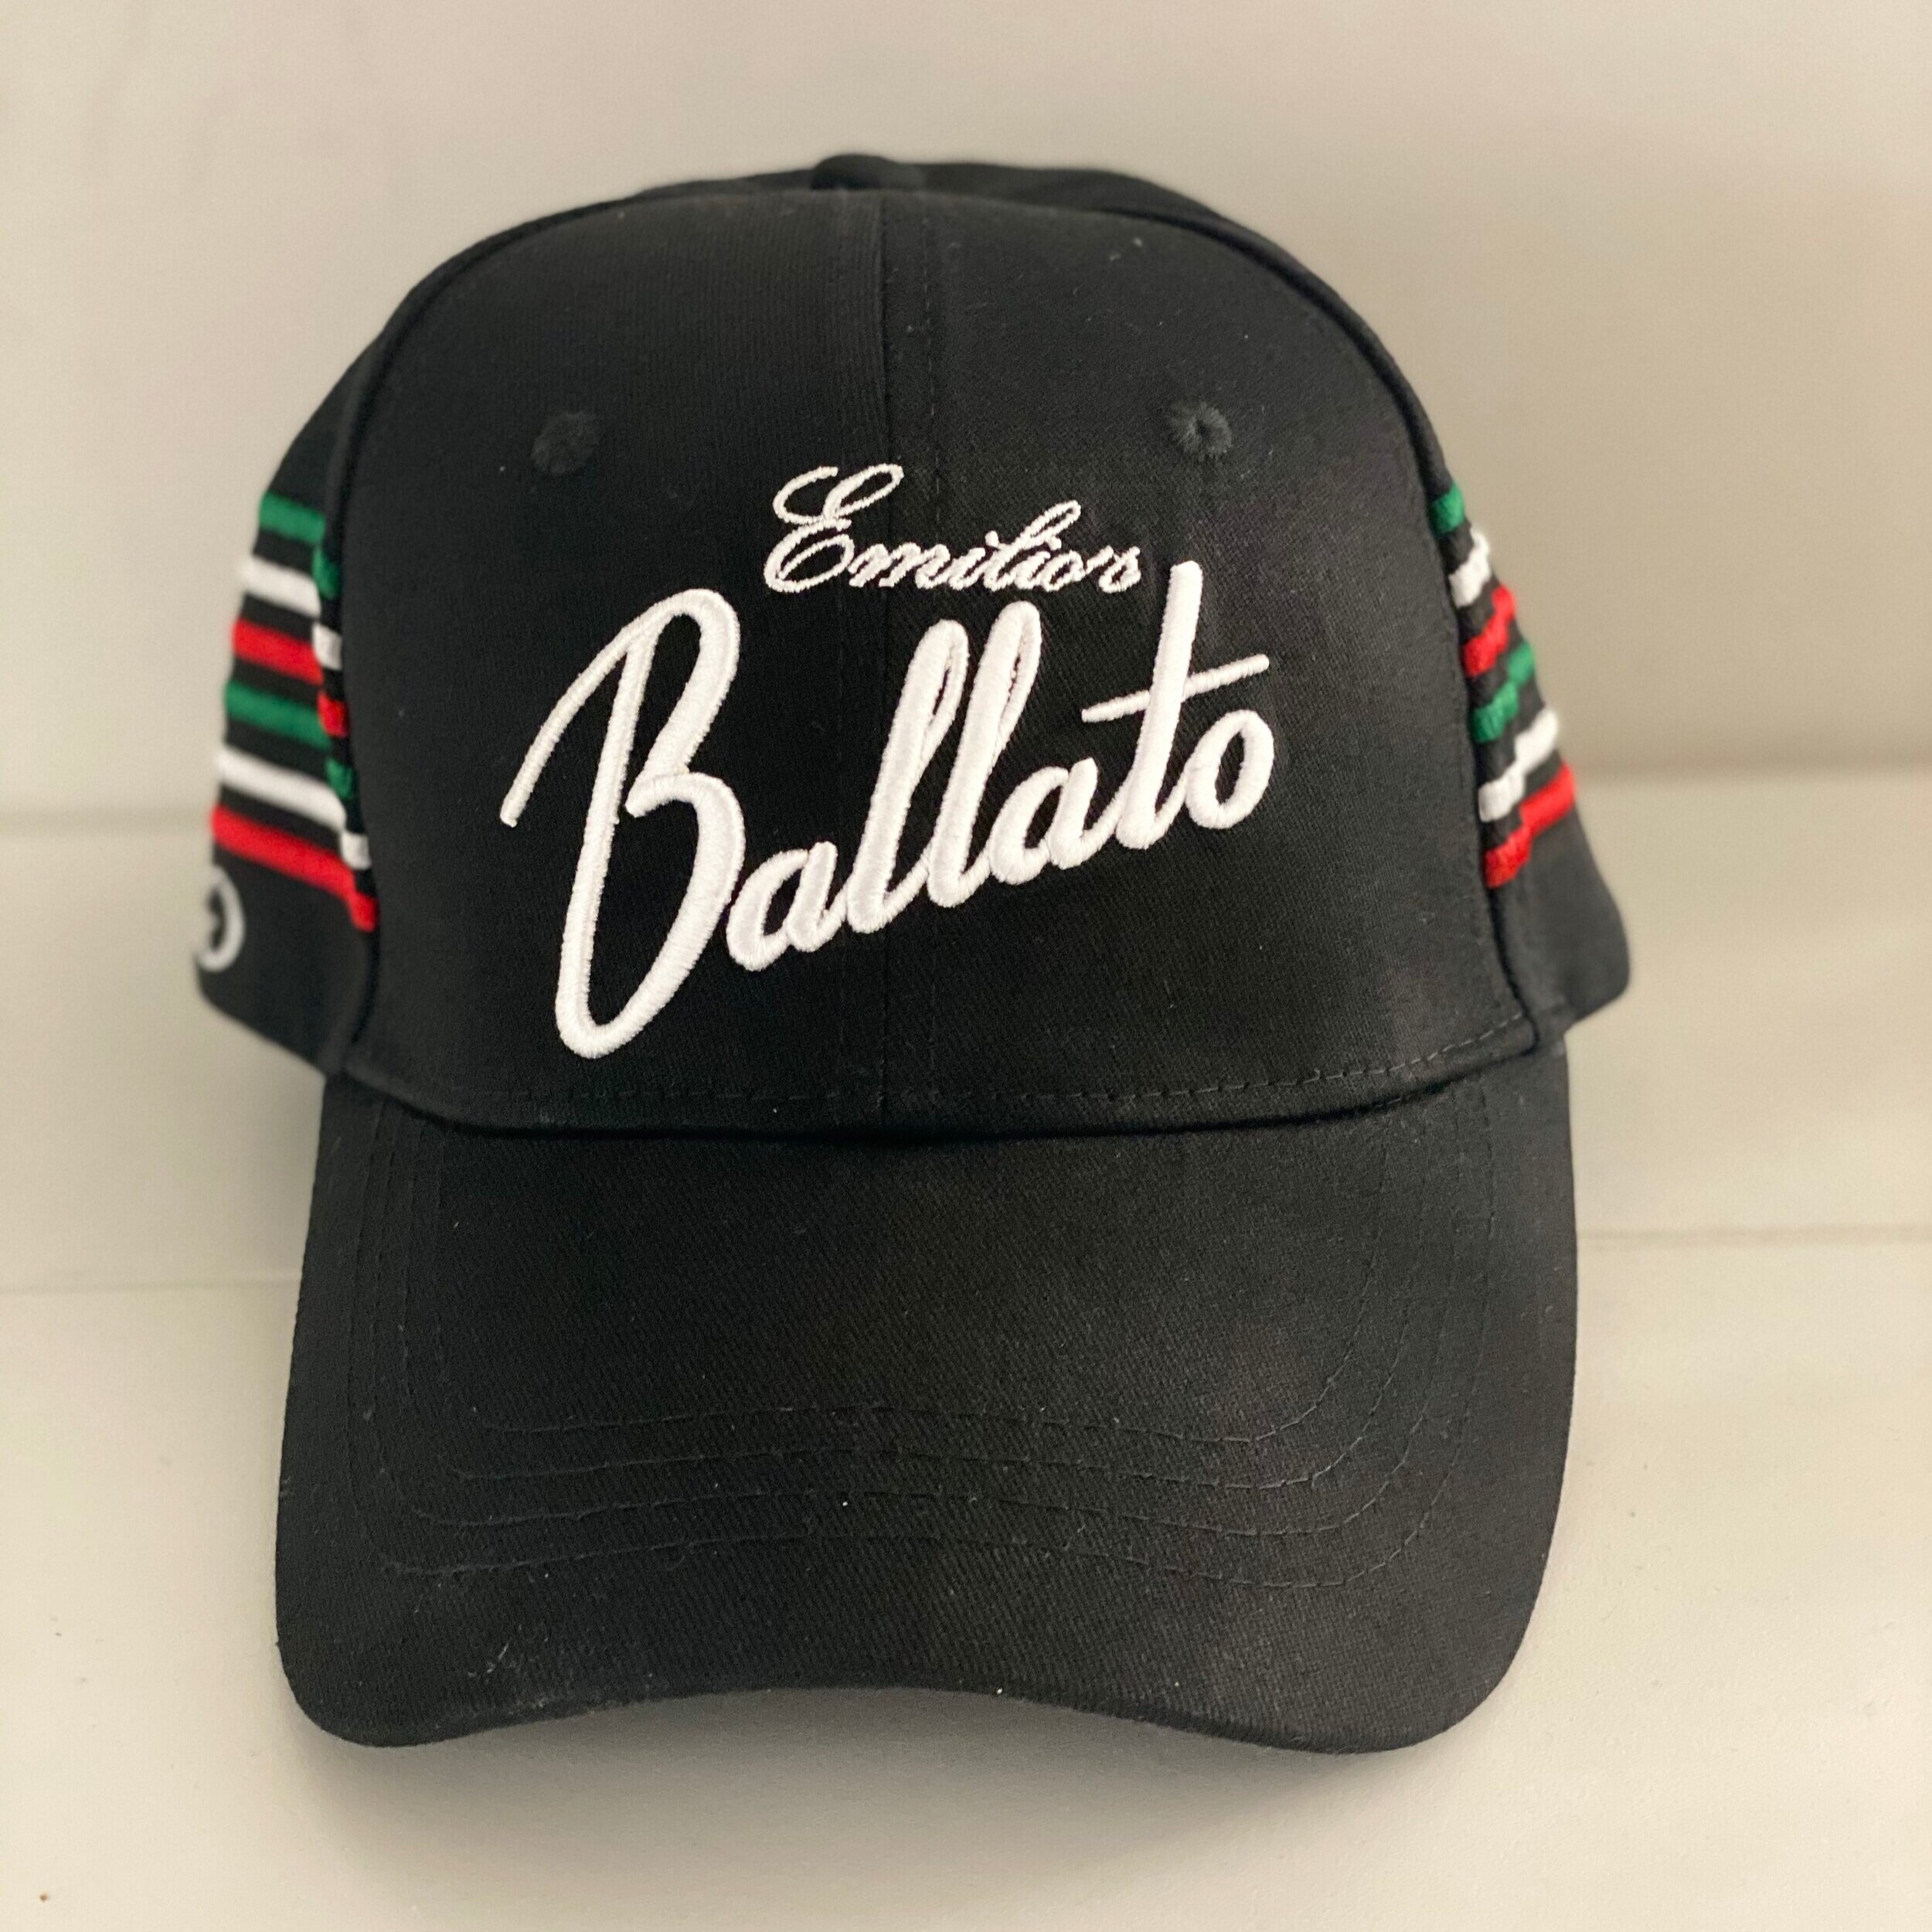 Grungy Gentleman x Emilio Ballato, $40